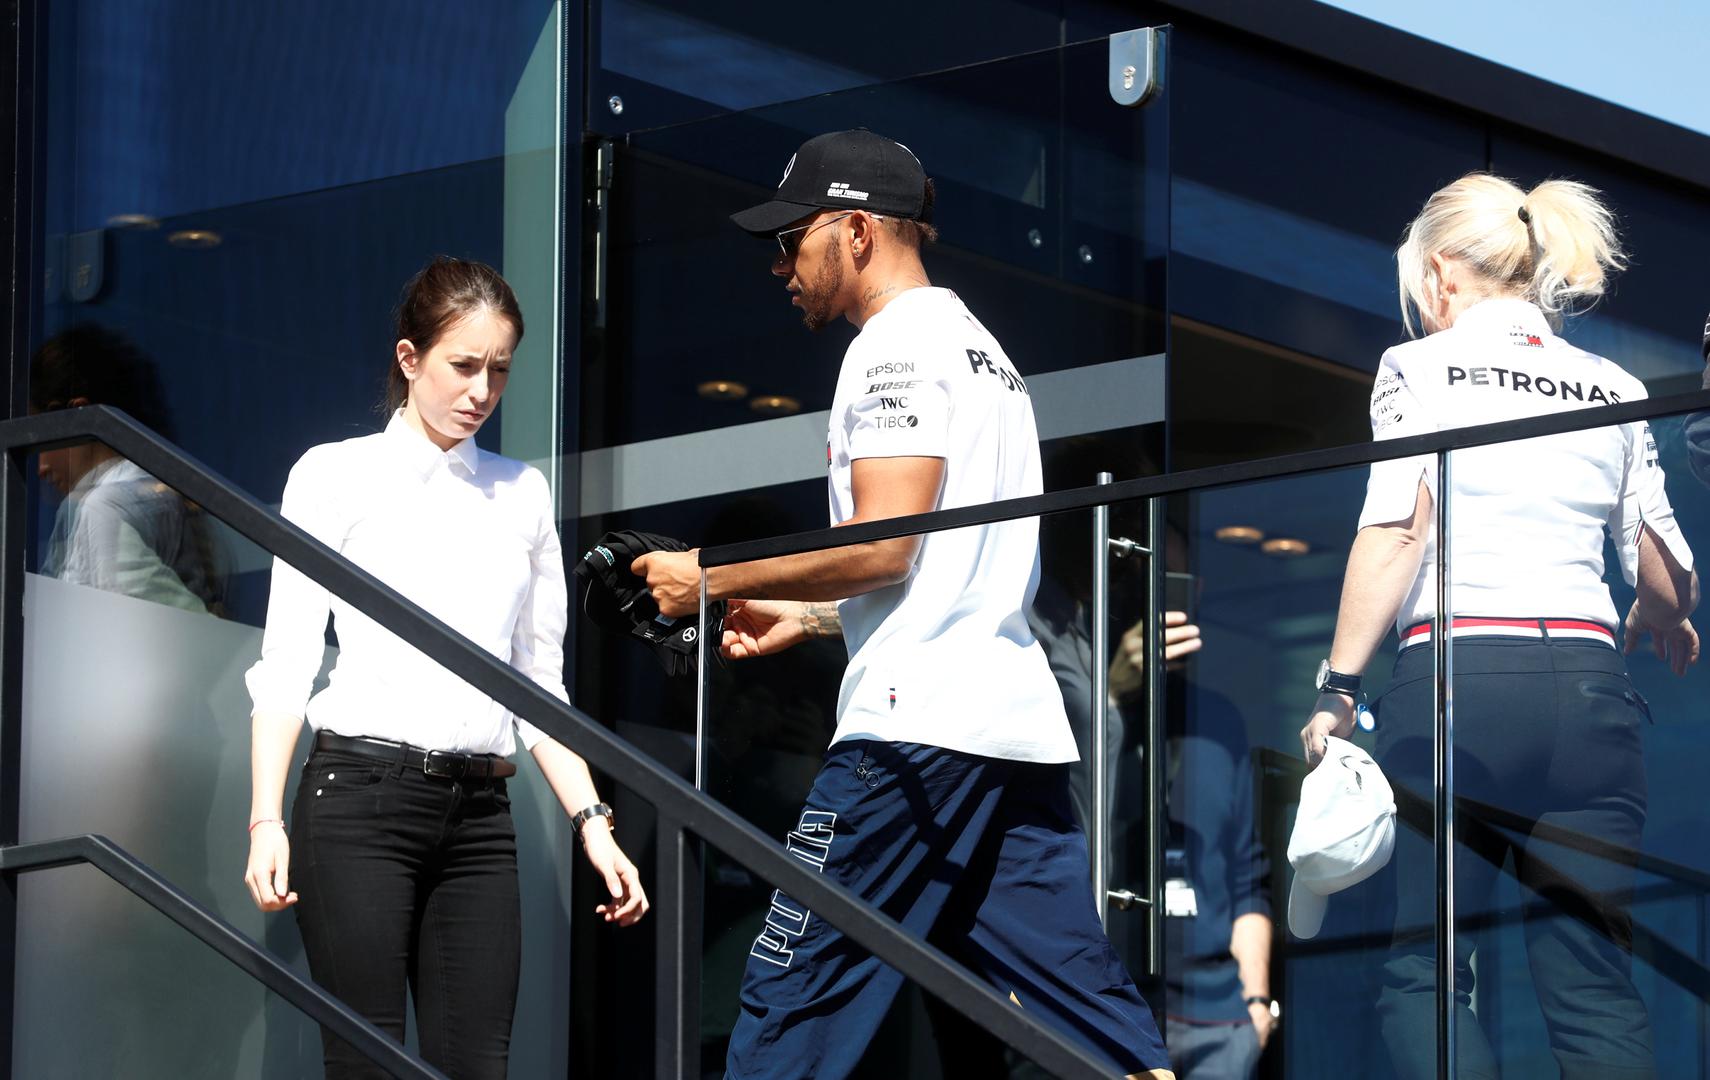 Lewis Hamilton jedan je od najplaćenijih sportaša današnjice, a ugovor s Mercedesom godišnje mu donosi preko 40 milijuna eura.

